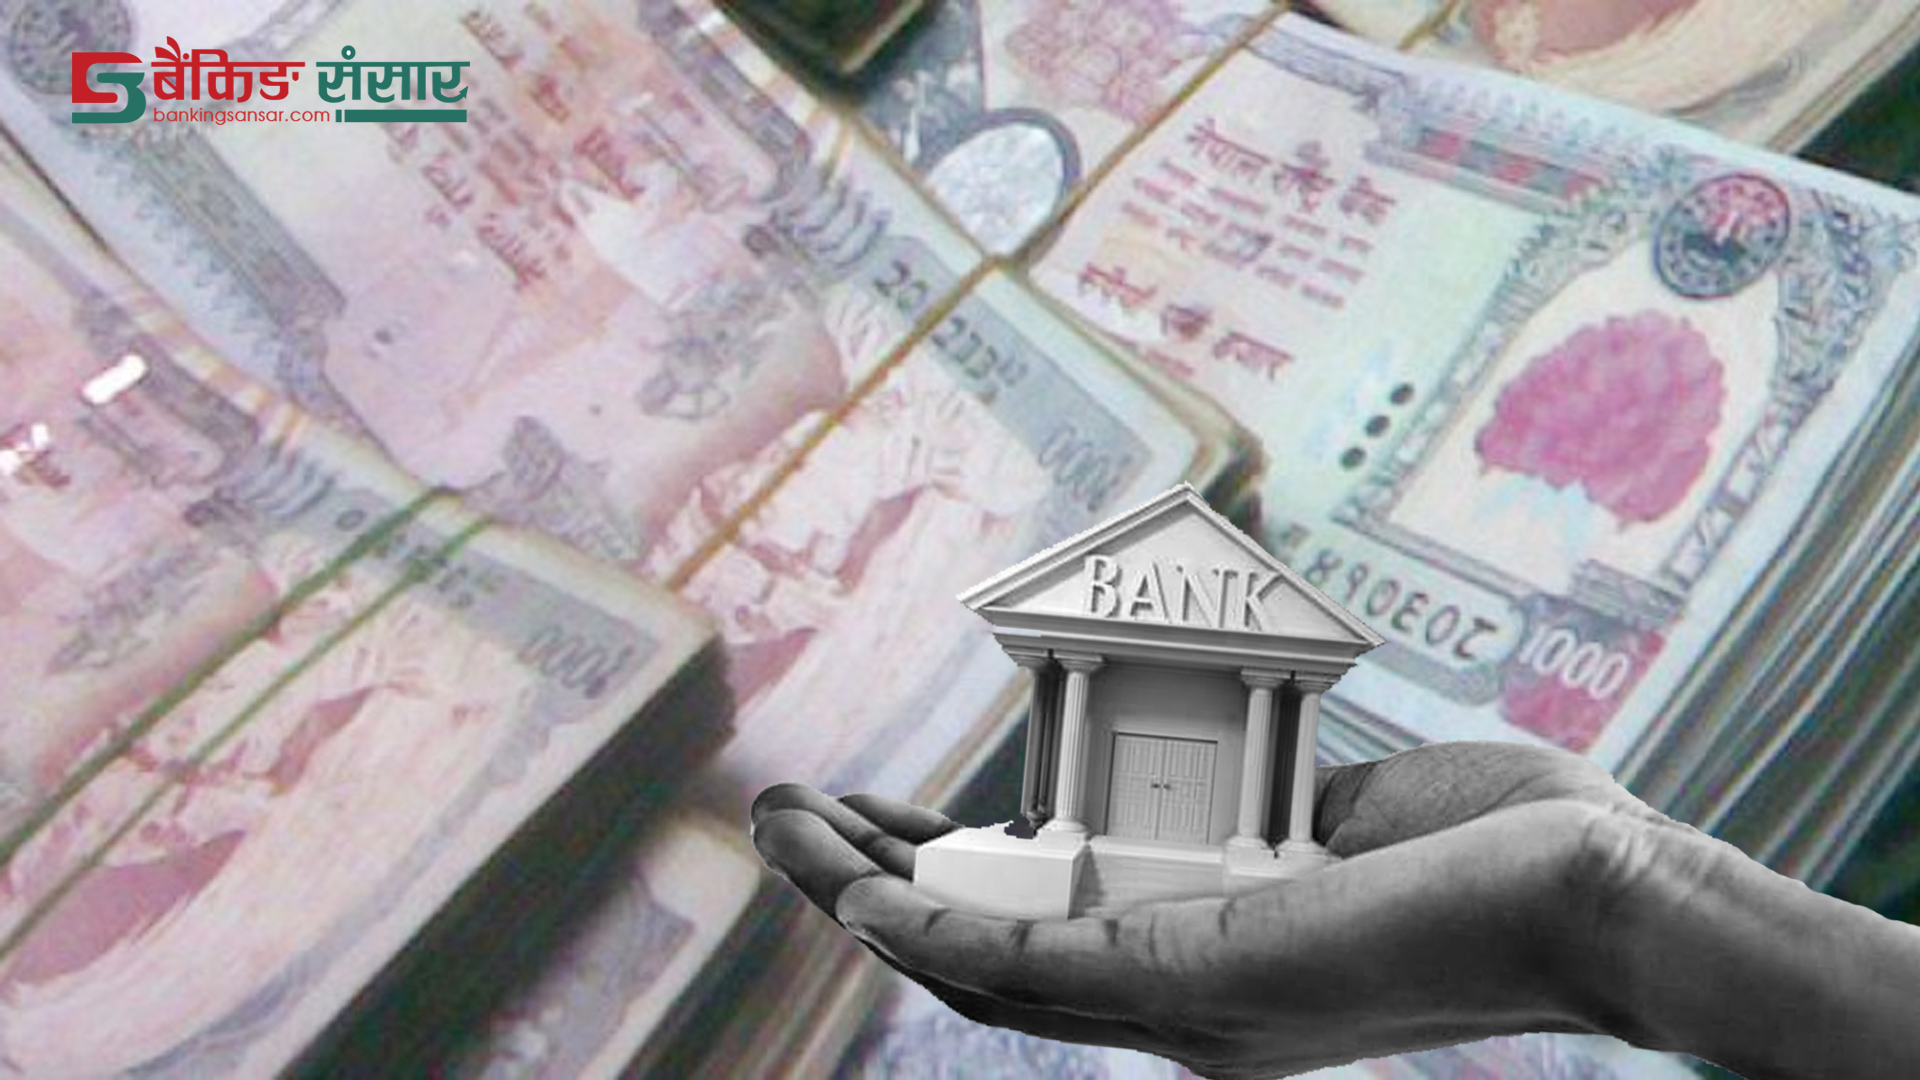 वाणिज्य बैंकको नाफामा १३. ४७ प्रतिशतको संकुचन, सबैभन्दा बढी नाफा कमाउनेमा नबिल नेपाल बैंककोमा संकुचन